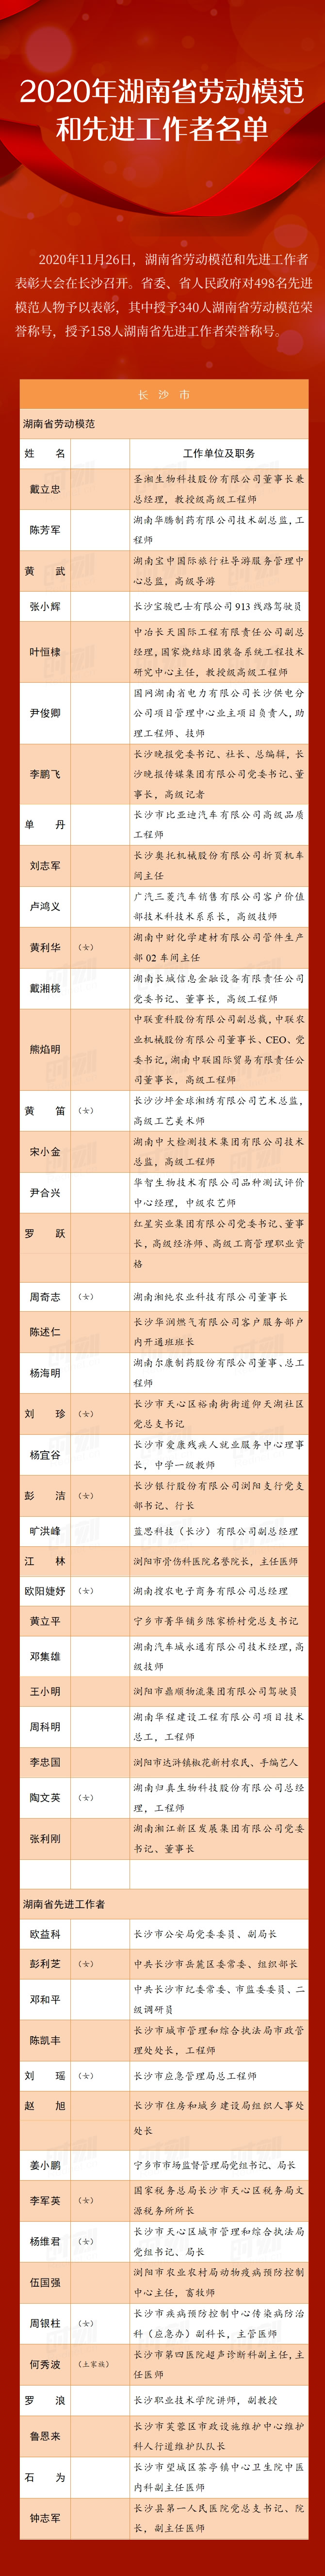 湖南表彰498名劳动模范和先进工作者 看看湘潭哪些人上榜